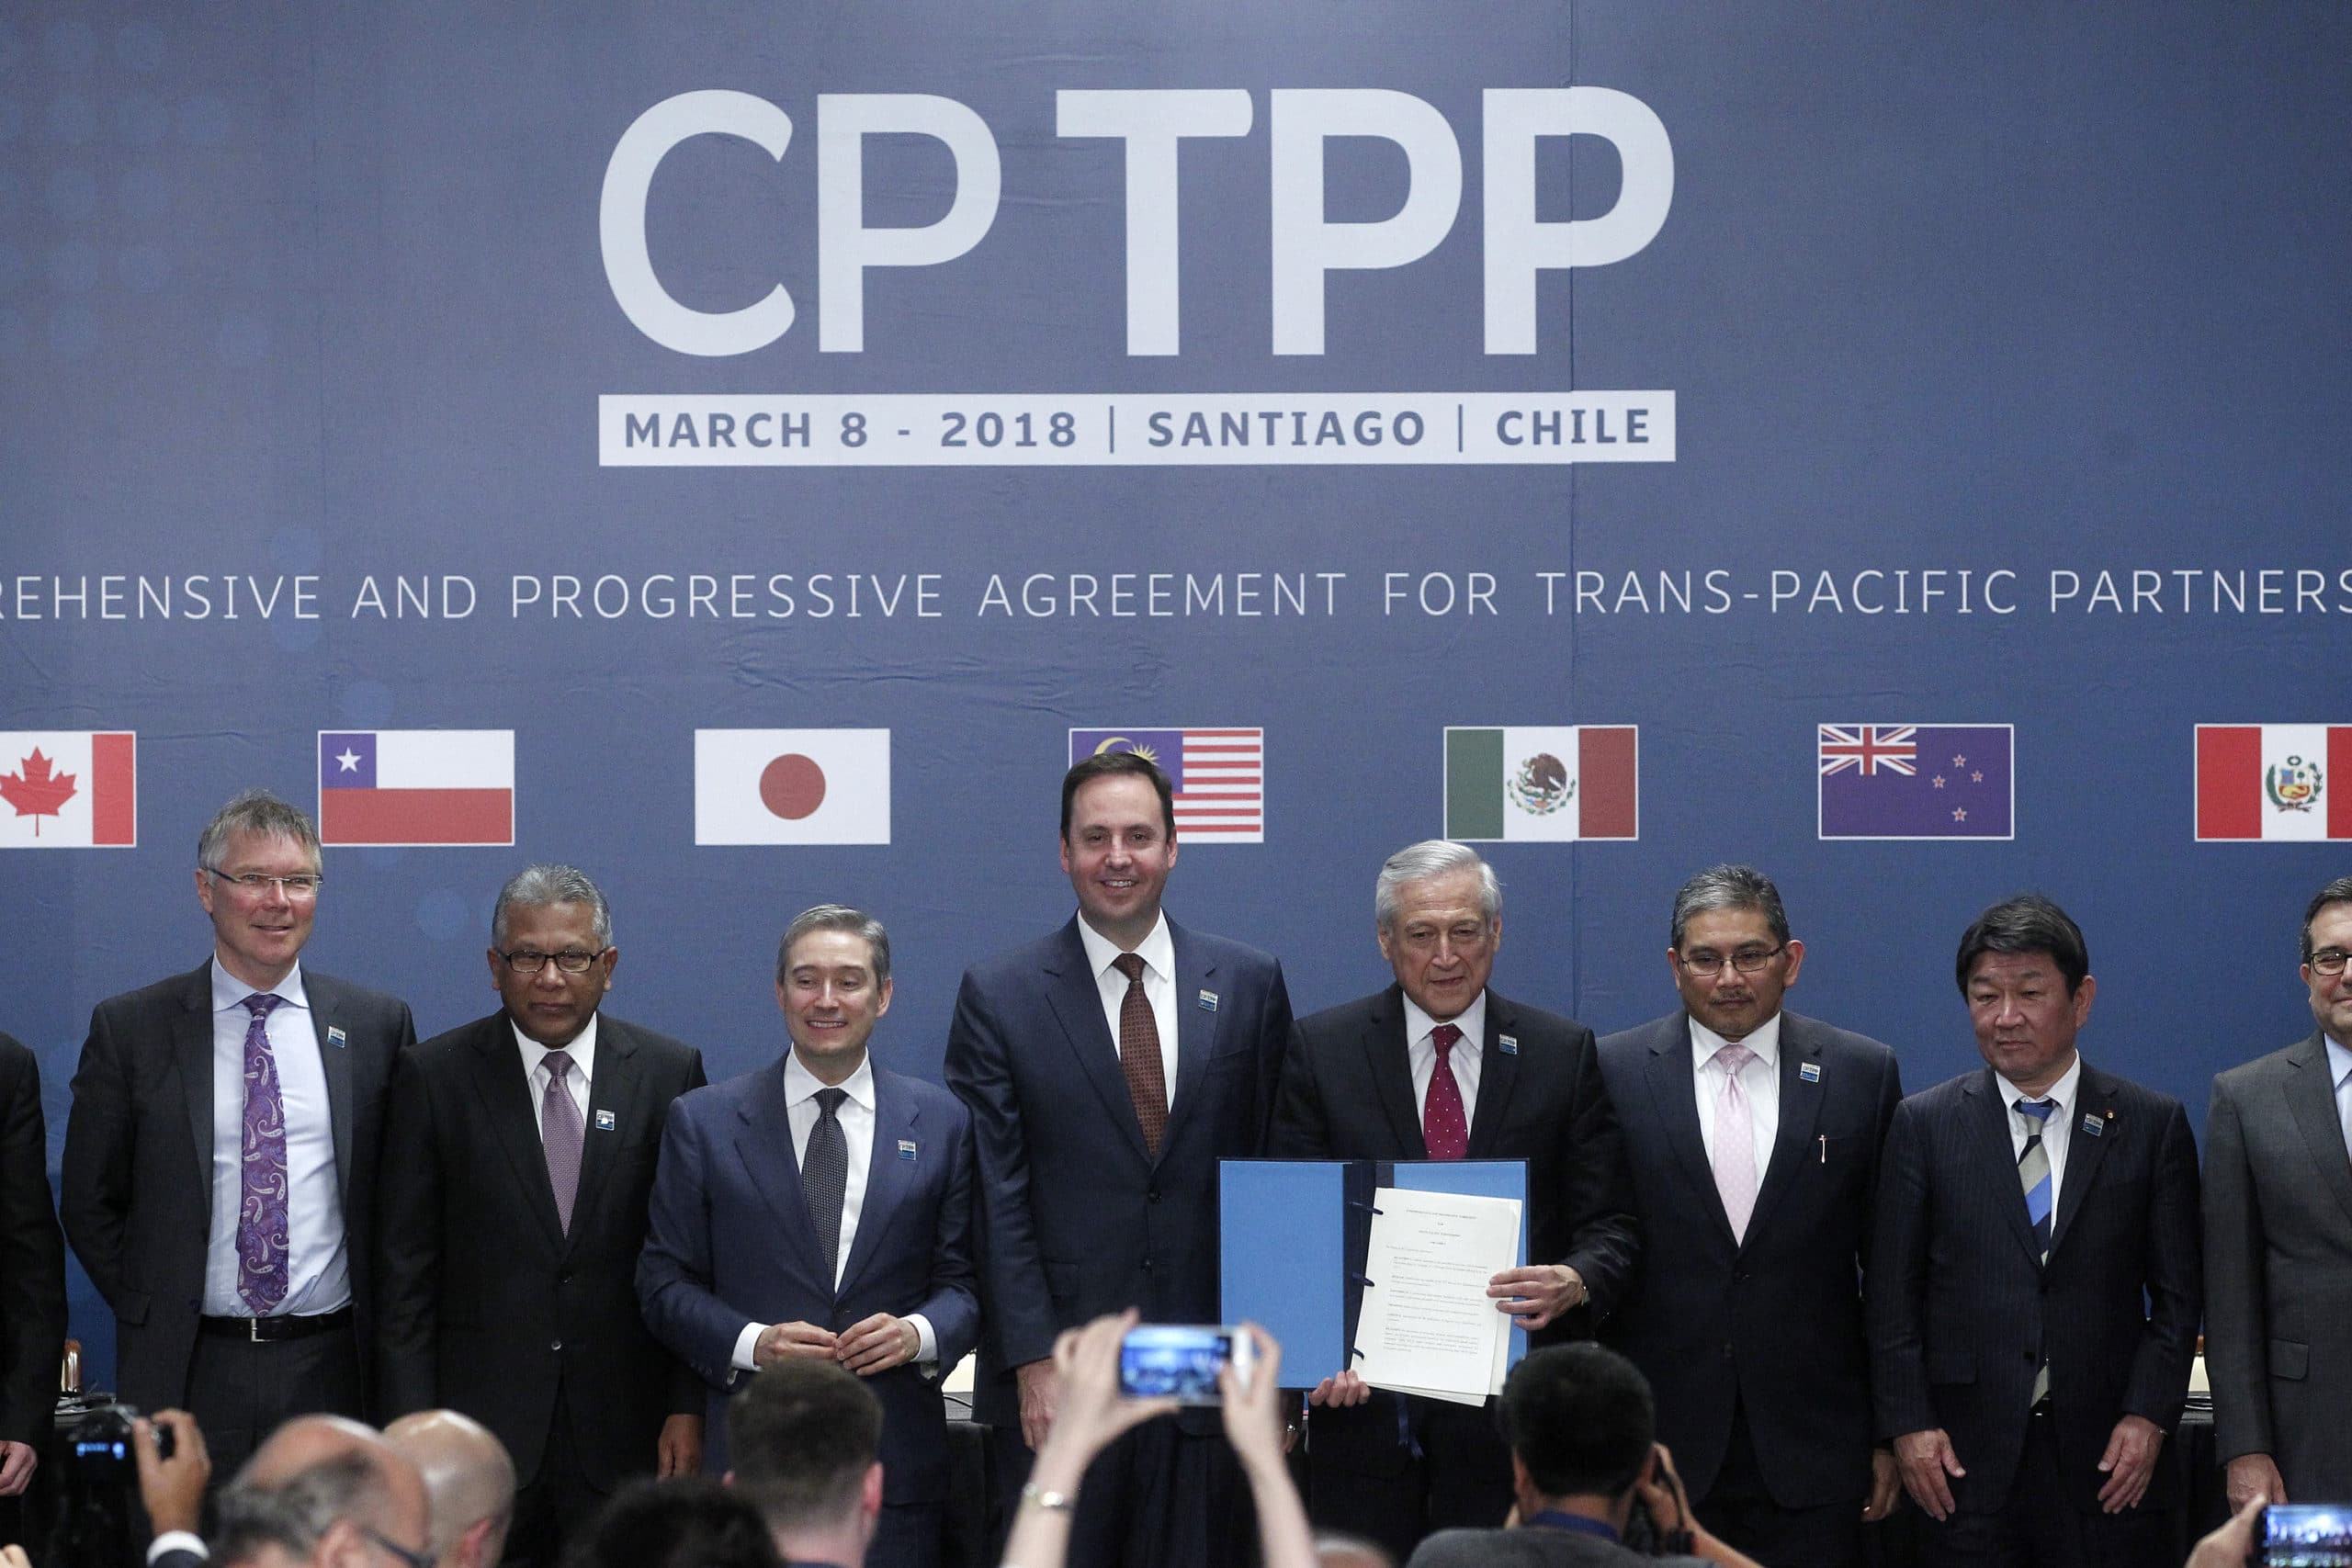 Costa Rica solicita ingreso al Acuerdo Transpacífico, un grupo económico conformado por 11 países